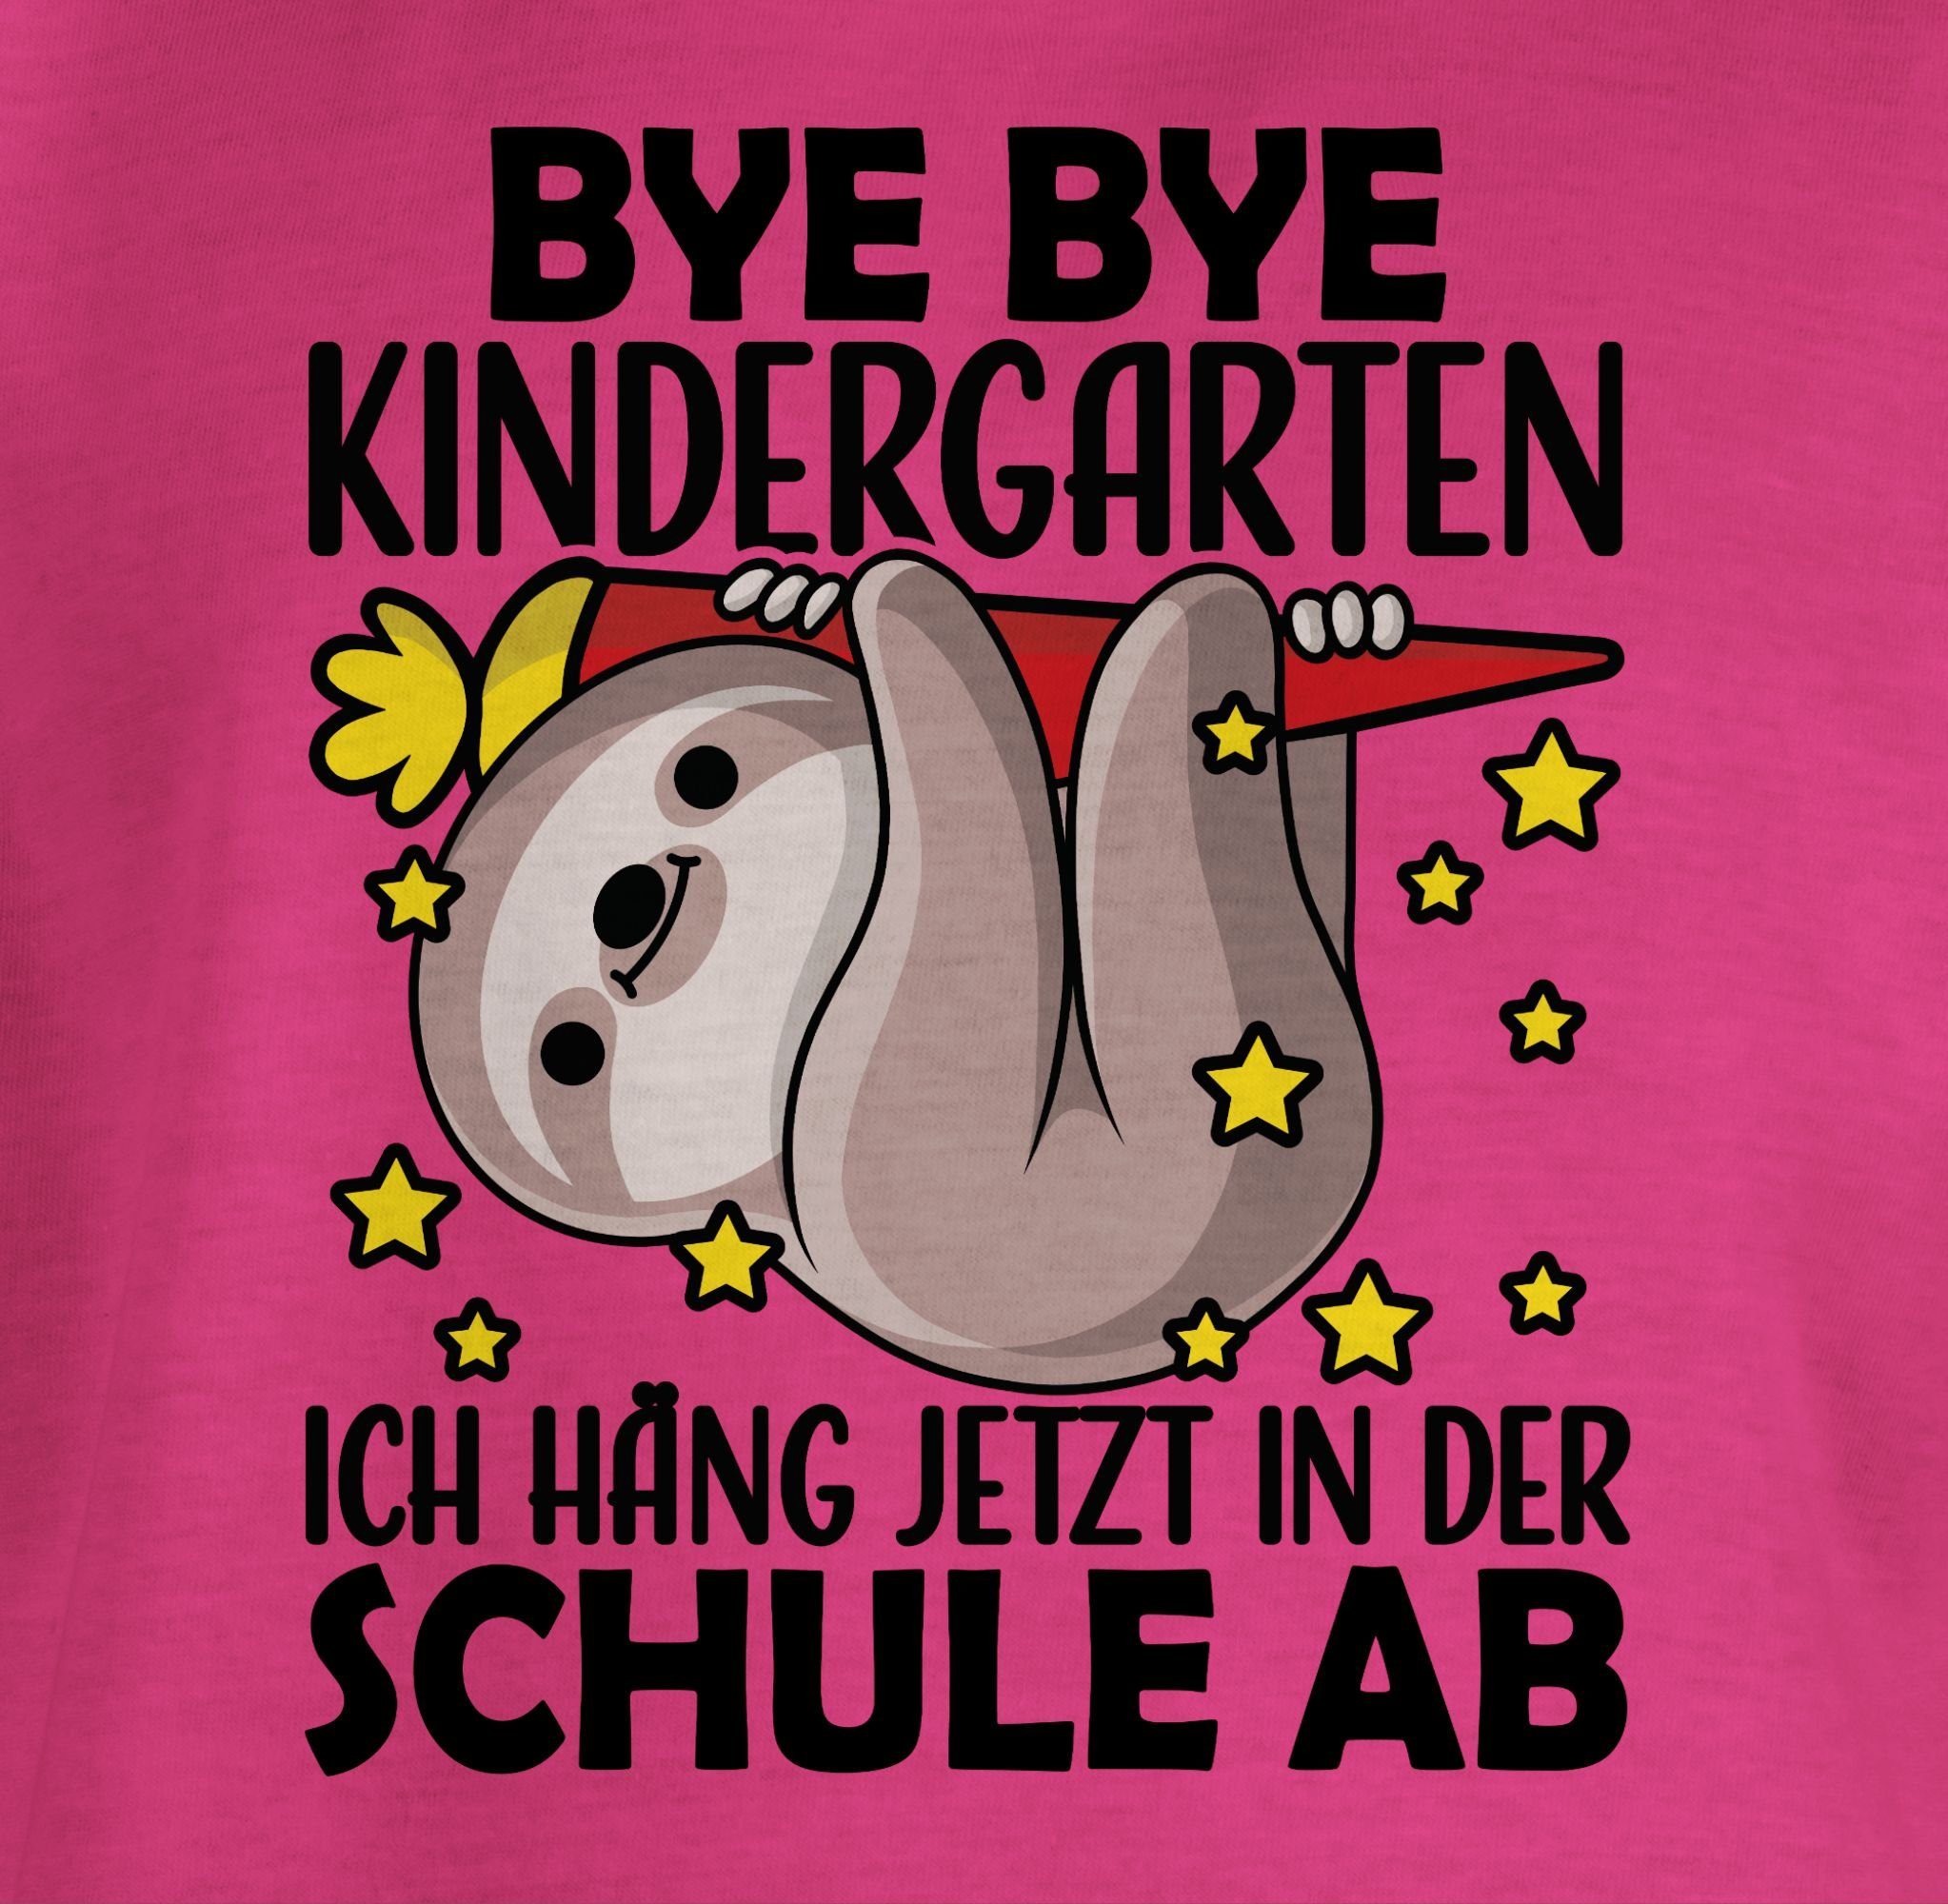 - s mit Shirtracer Fuchsia der Bye ich Einschulung Schule Bye hänge in Faultier 1 Mädchen jetzt T-Shirt Kindergarten ab